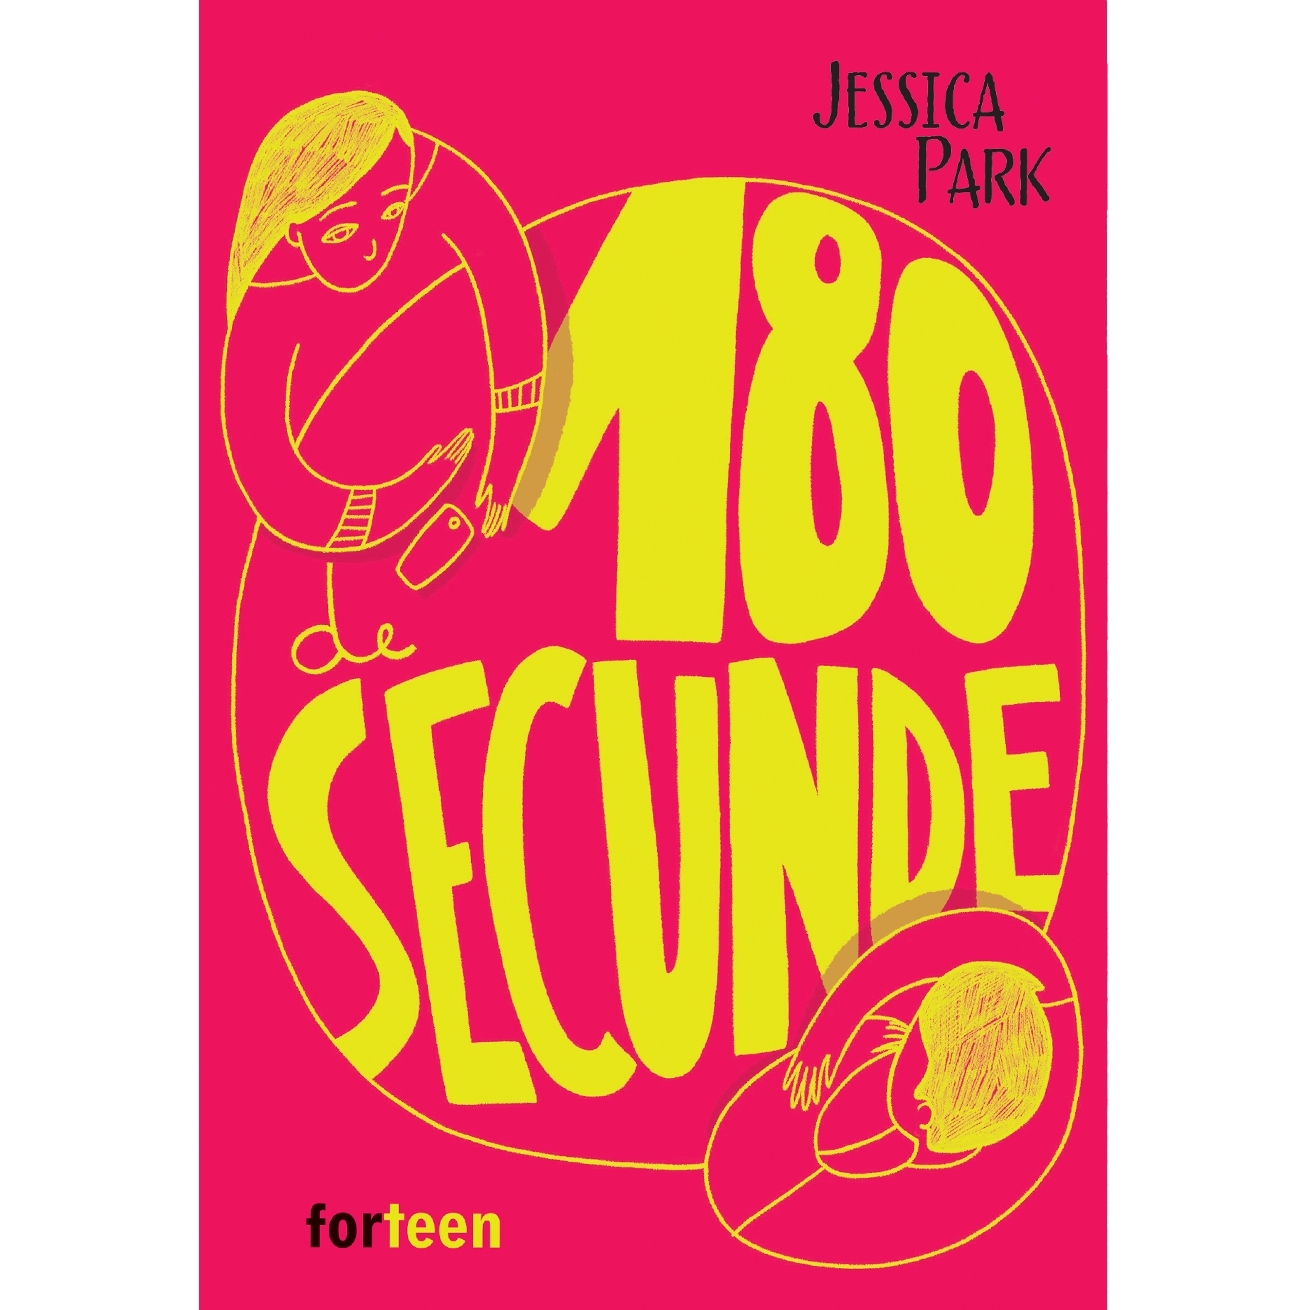 180 de secunde | Jessica Park